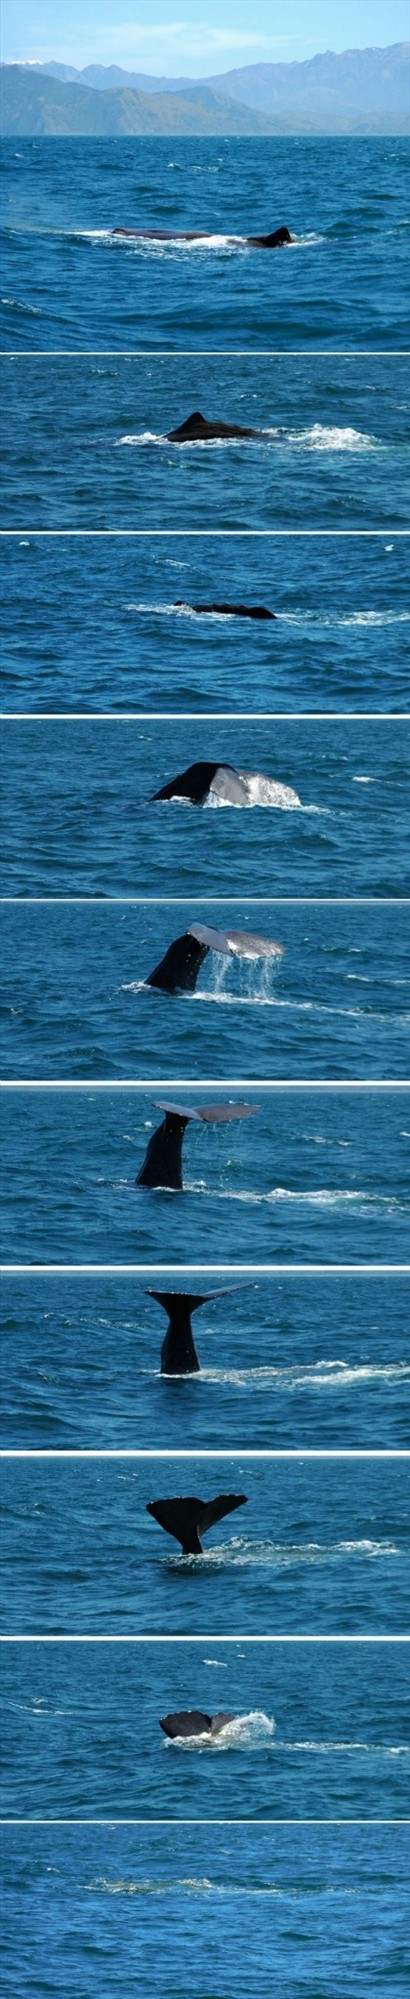 萬眾期待的鯨魚之舞正式展開！隨著尾鰭慢慢豎起， 一氣呵成沒入水中，牠可以潛入海中達一個小時之久